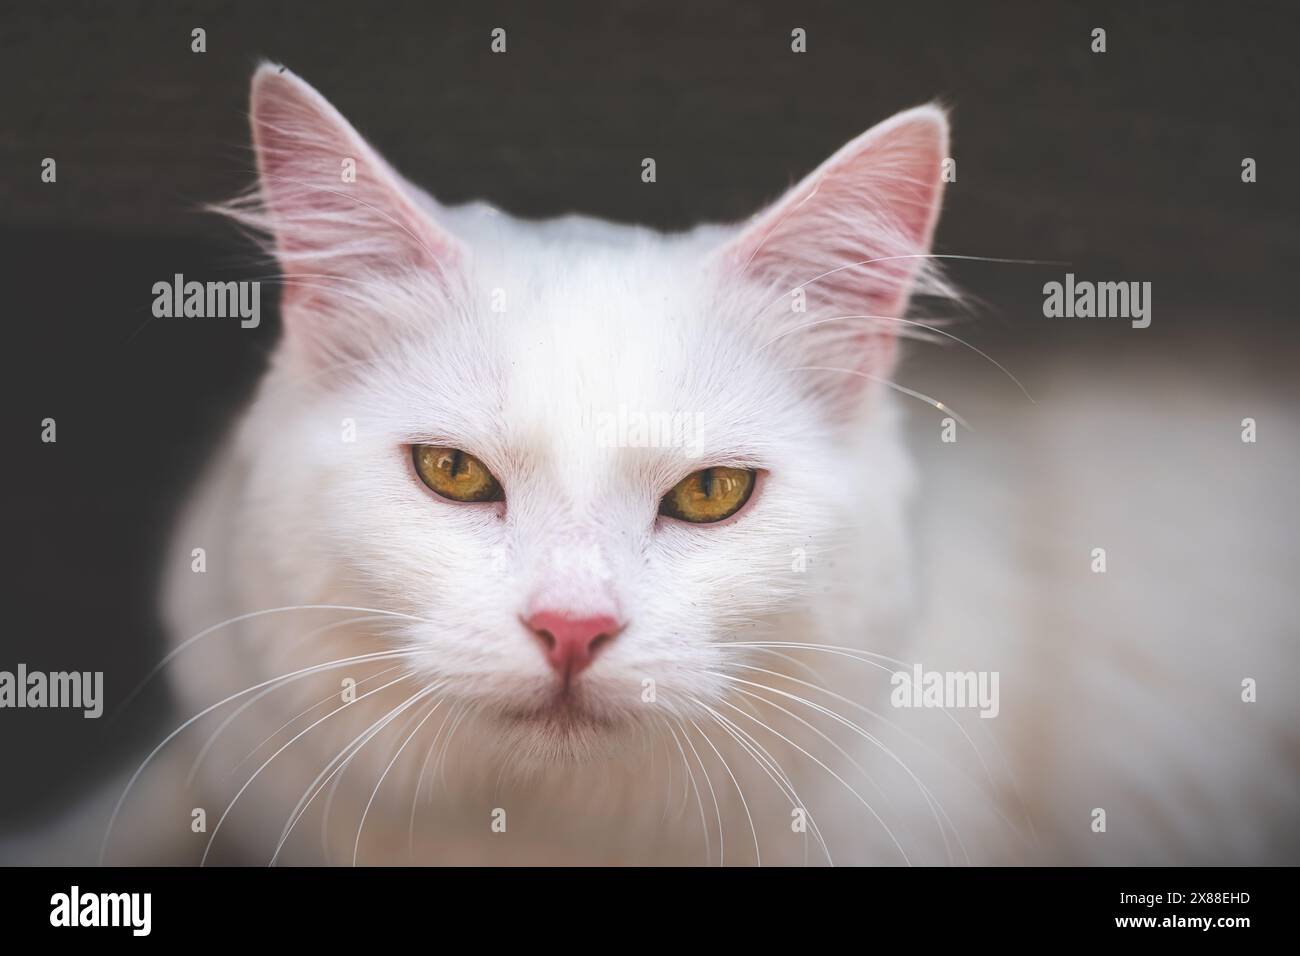 Ritratto di un gatto bianco con occhi gialli che guardano la fotocamera Foto Stock